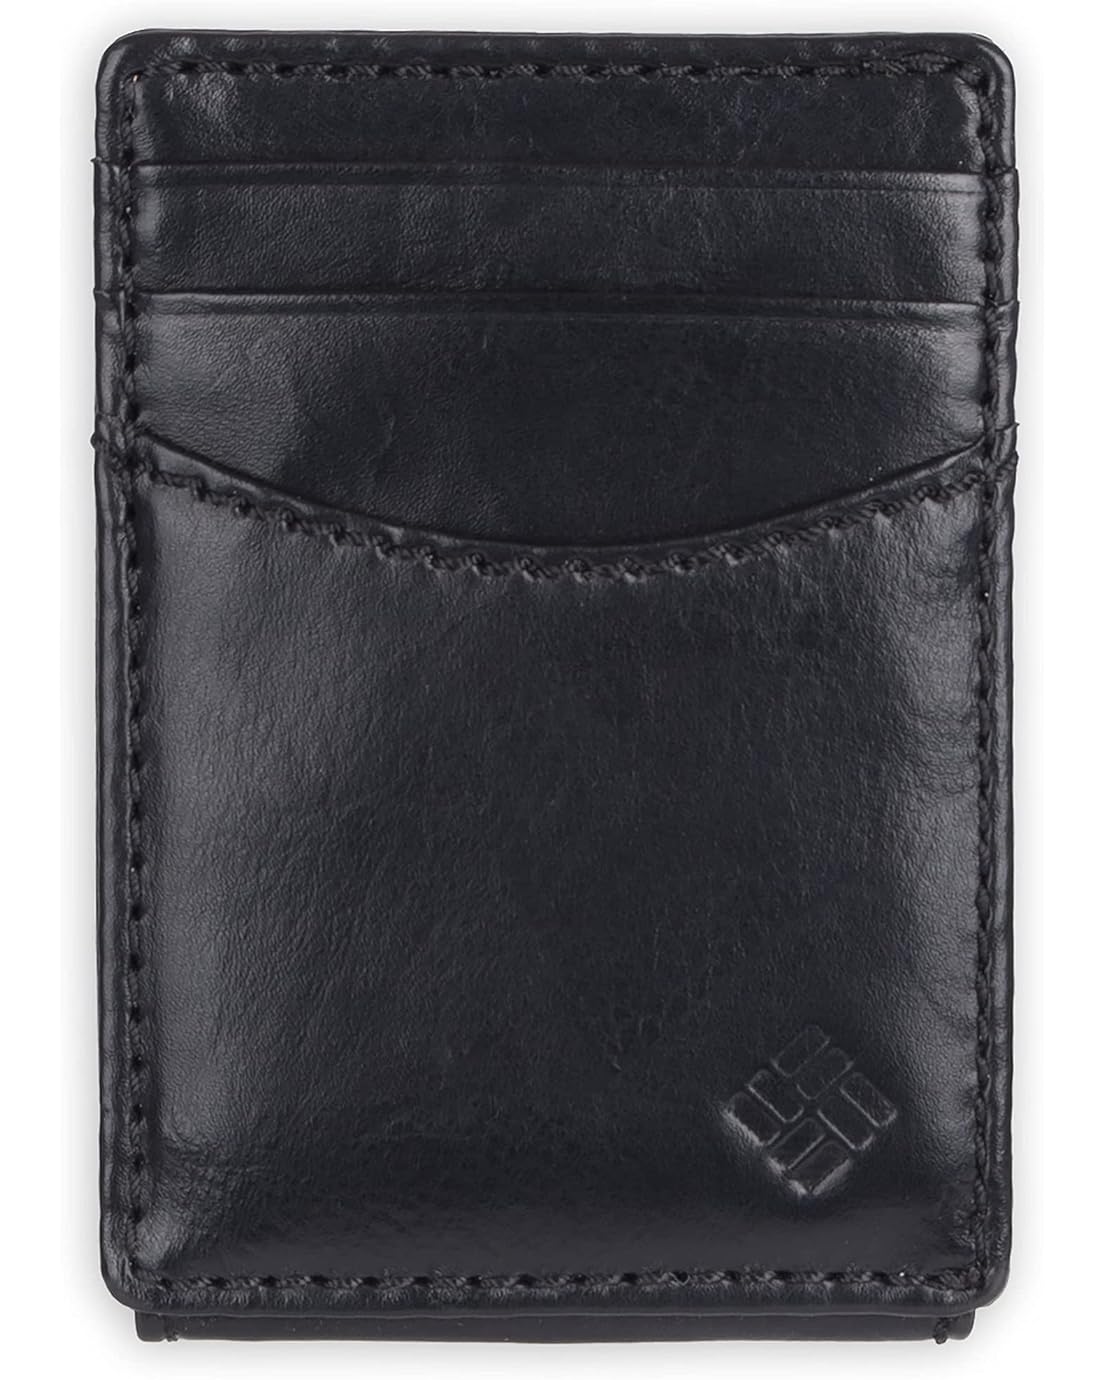 콜롬비아 Columbia Mens Leather Front Pocket Wallet Card Holder for Travel